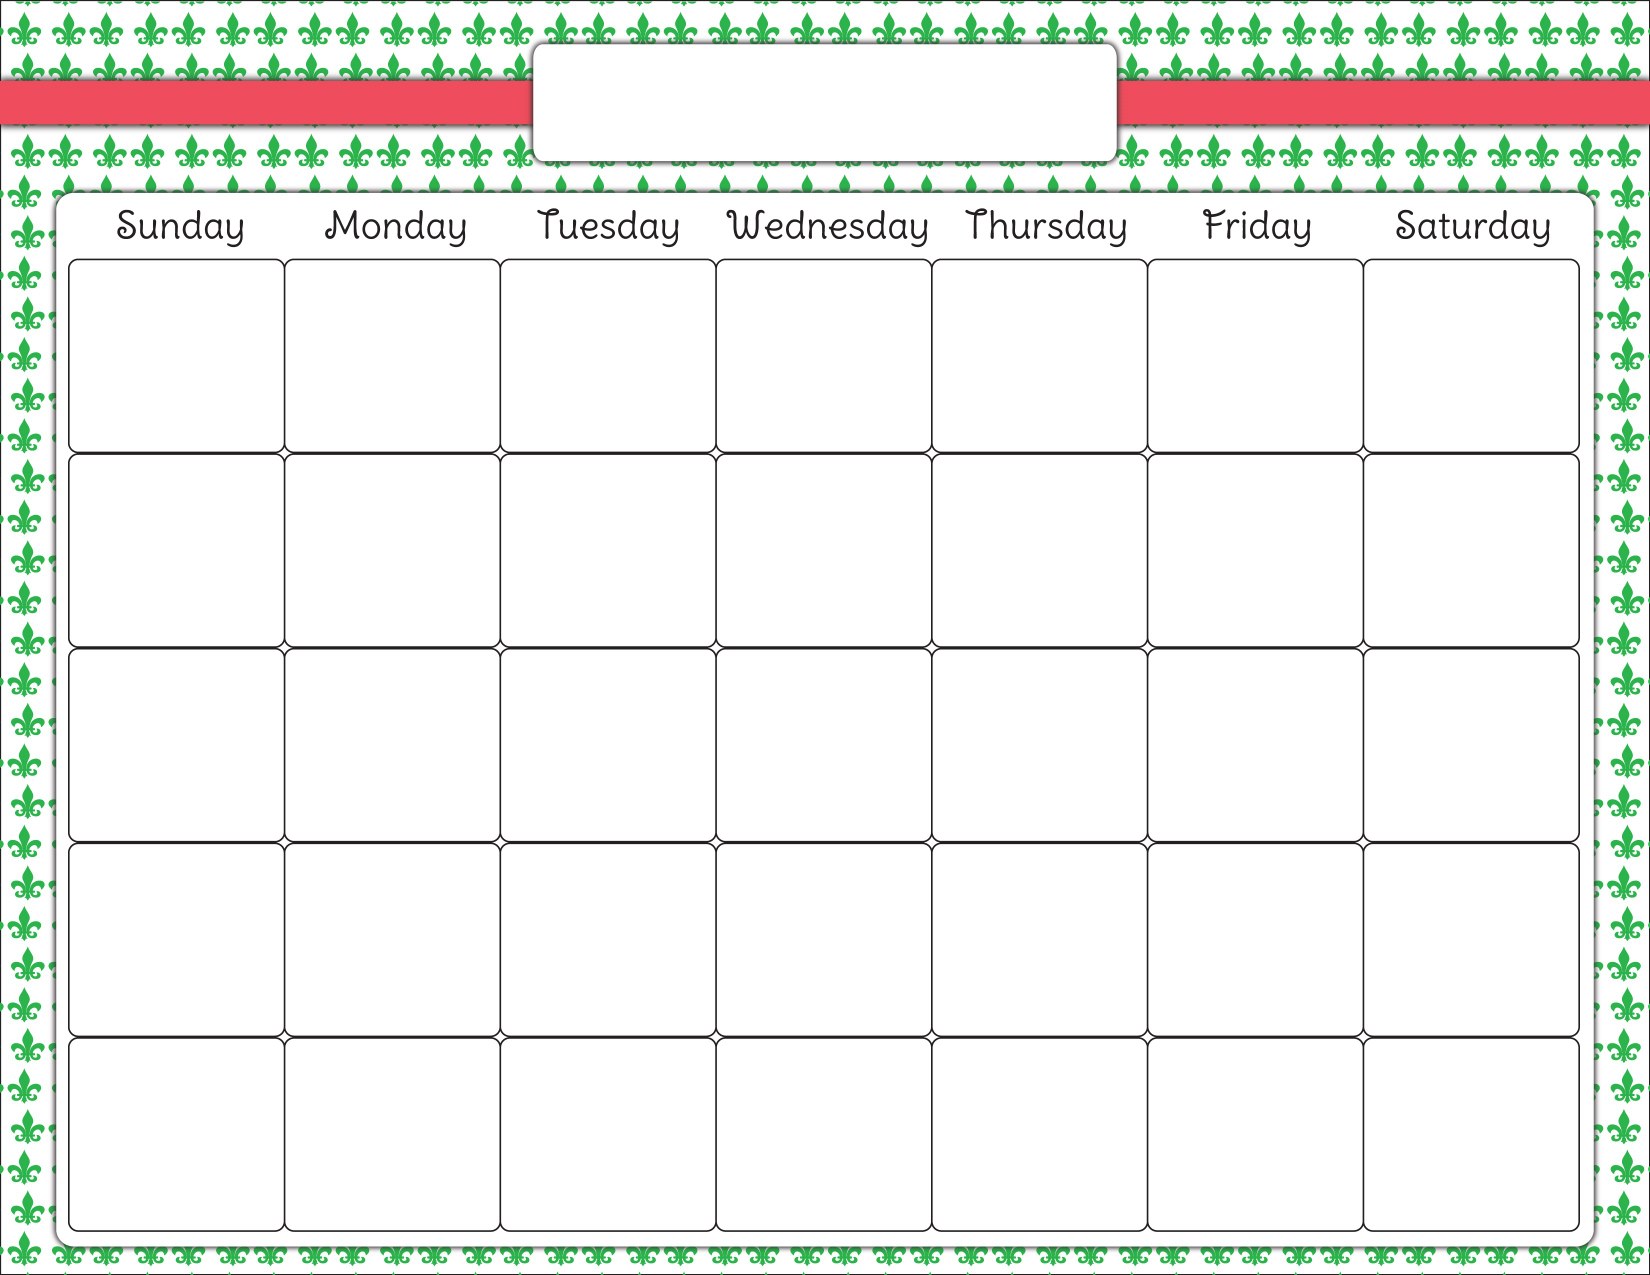 Календарь без месяцев. Календарь шаблон. План календарь на месяц. Календарь пустой. Календарь пустая таблица.